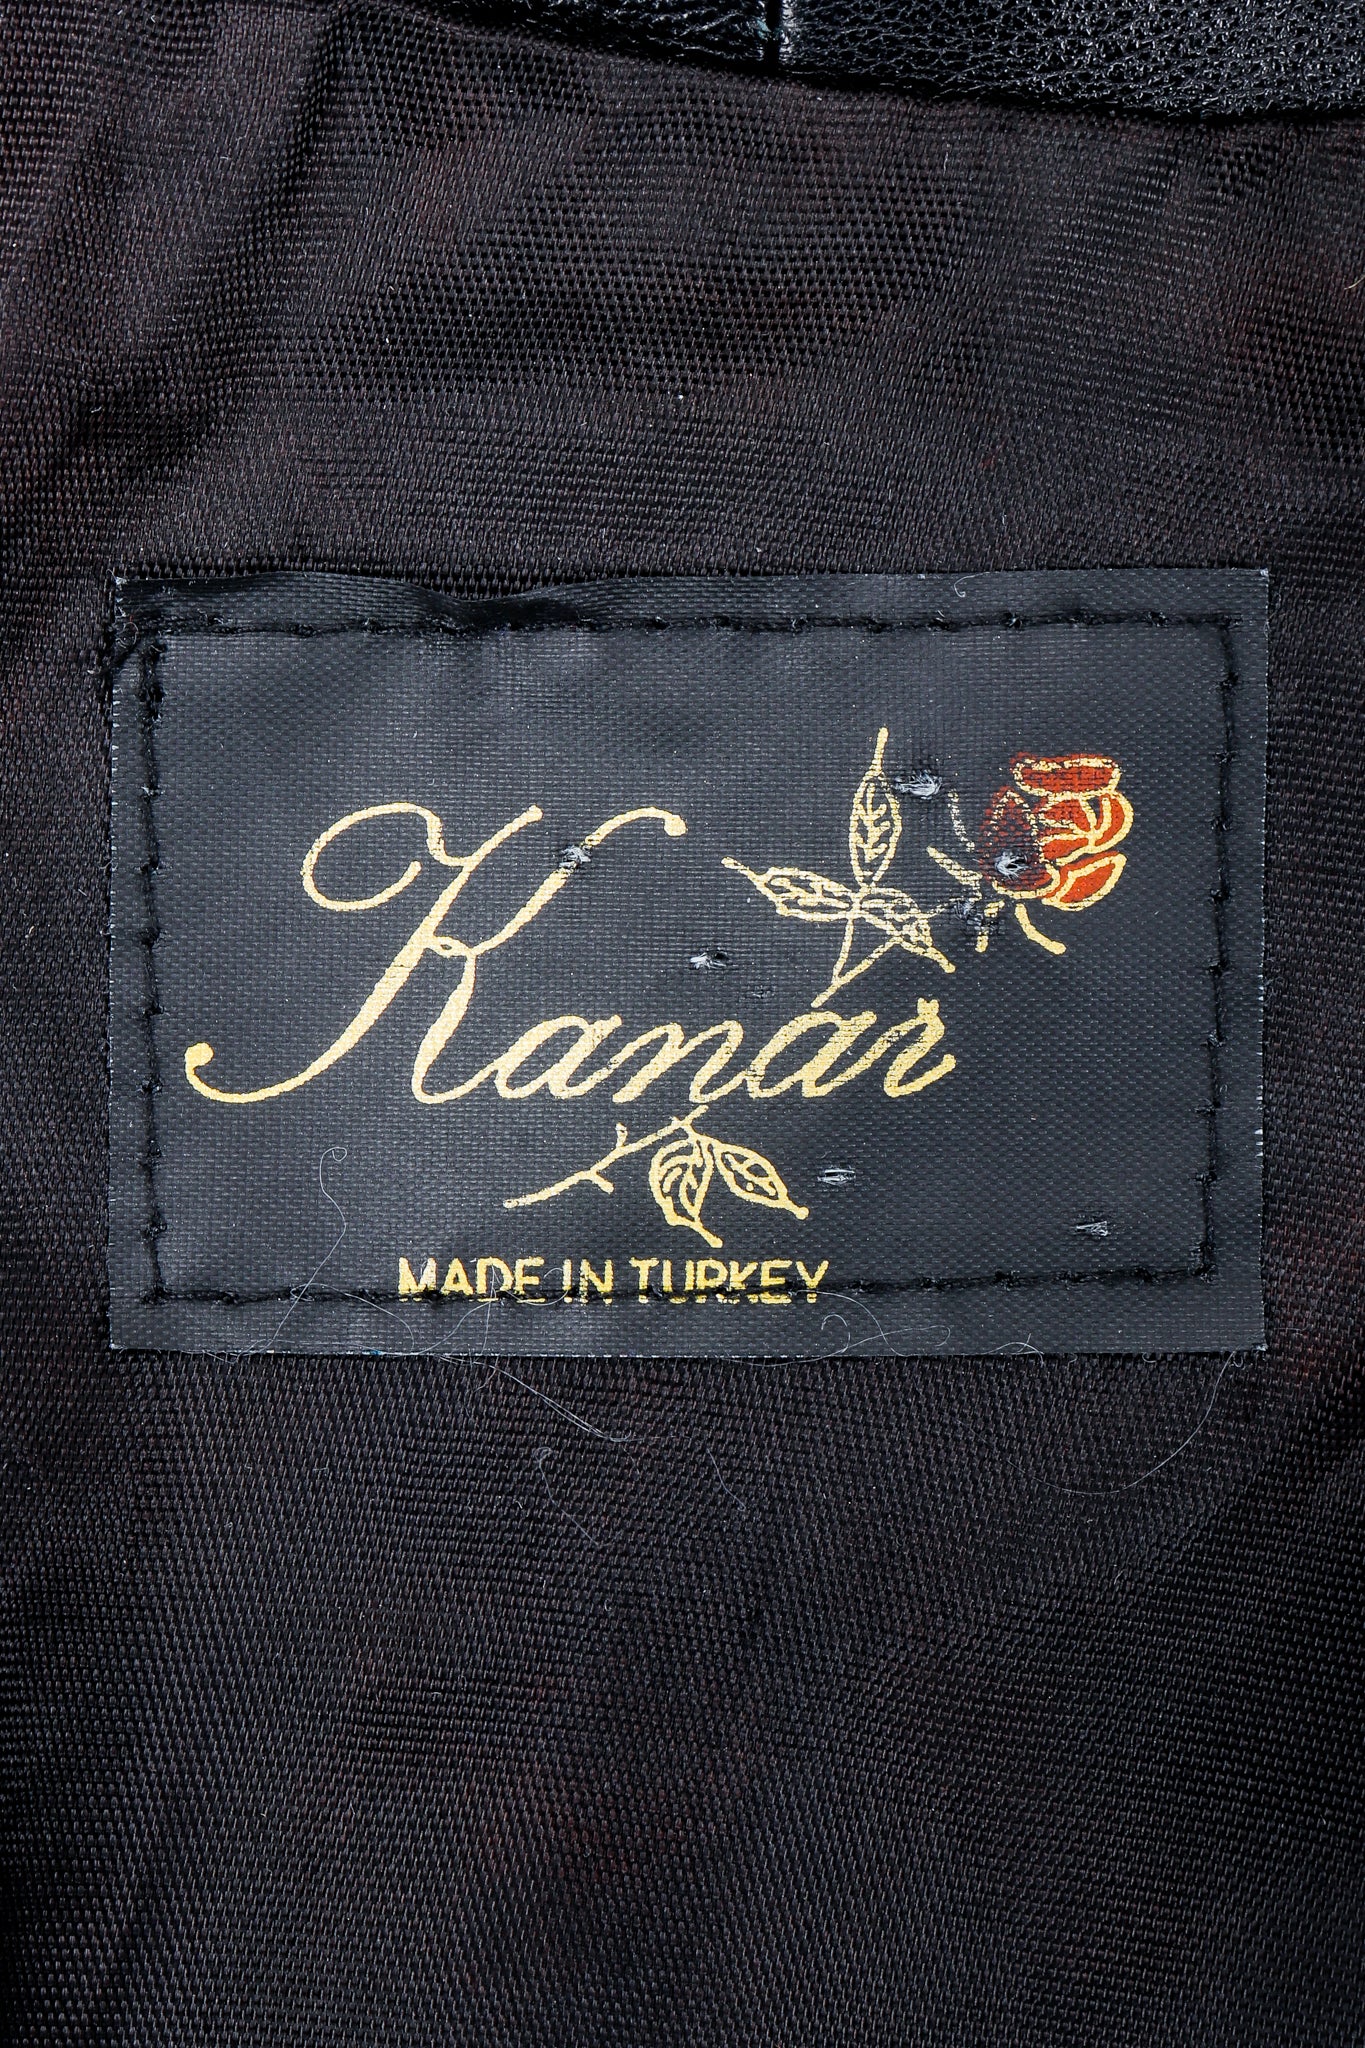 Vintage Kanar Label on black fabric